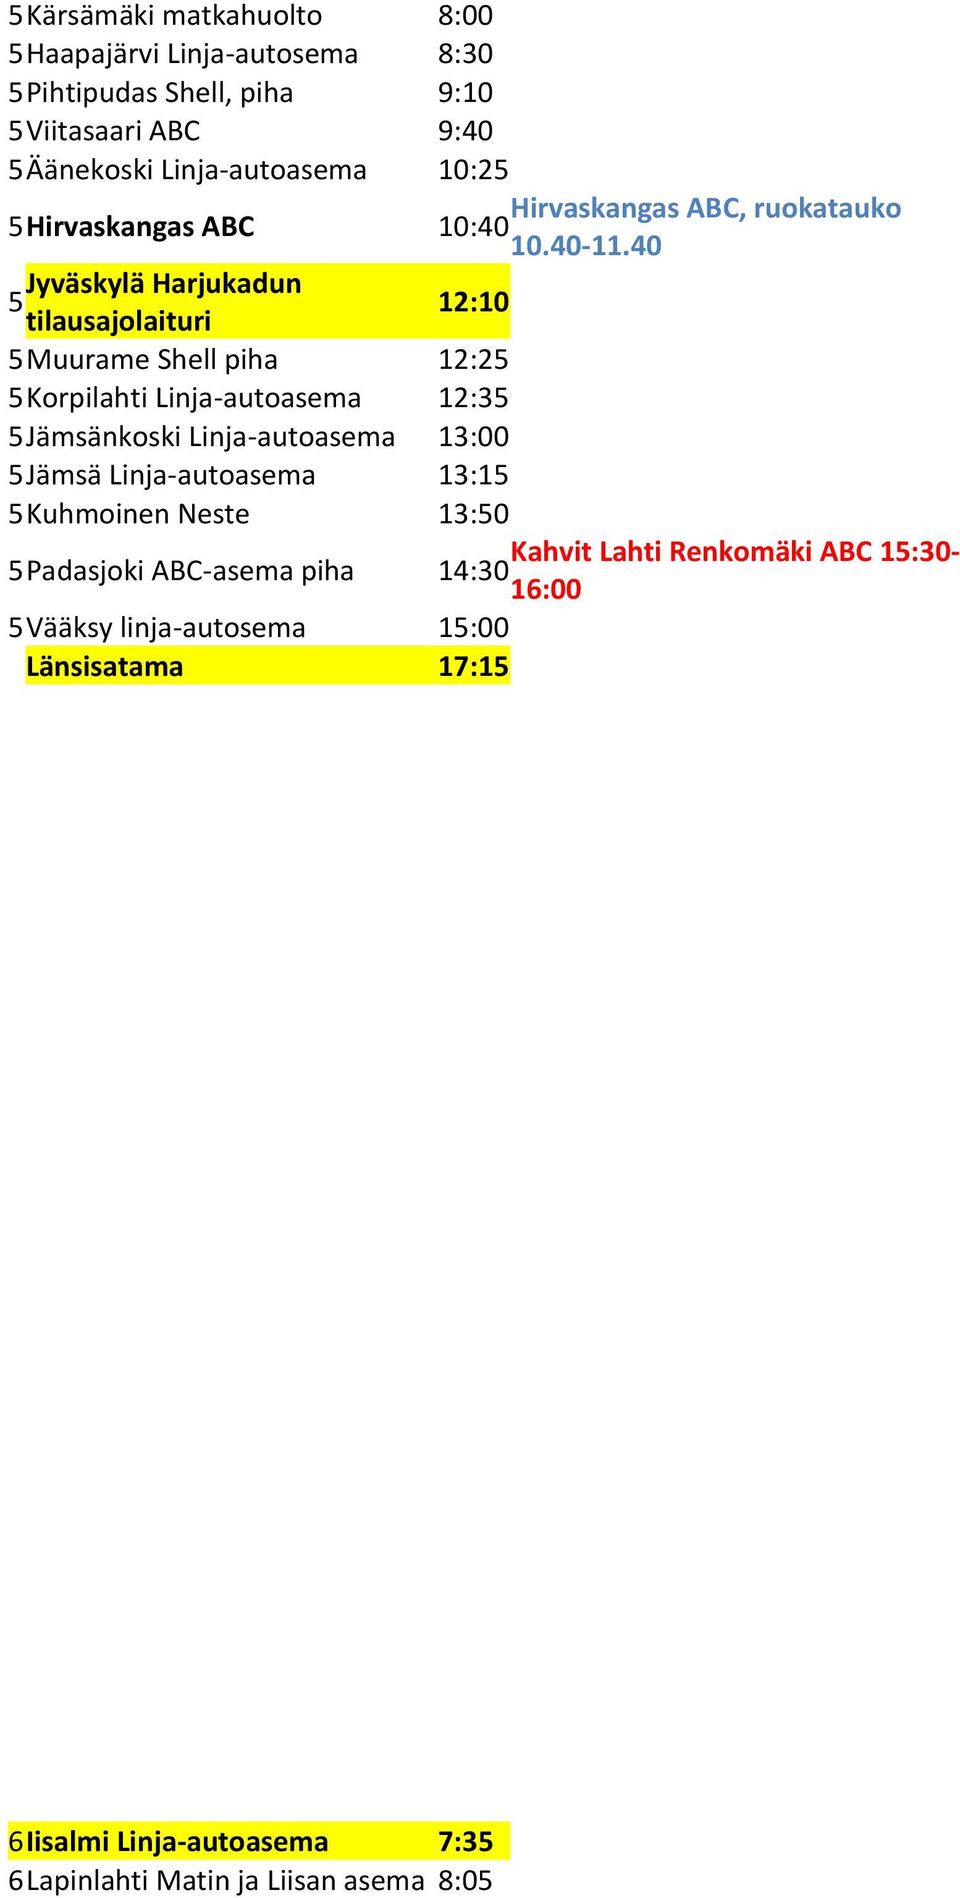 0 Jyväskylä Harjukadun 5 :0 5 Muurame Shell piha :5 5 Korpilahti Linja-autoasema :35 5 Jämsänkoski Linja-autoasema 3:00 5 Jämsä